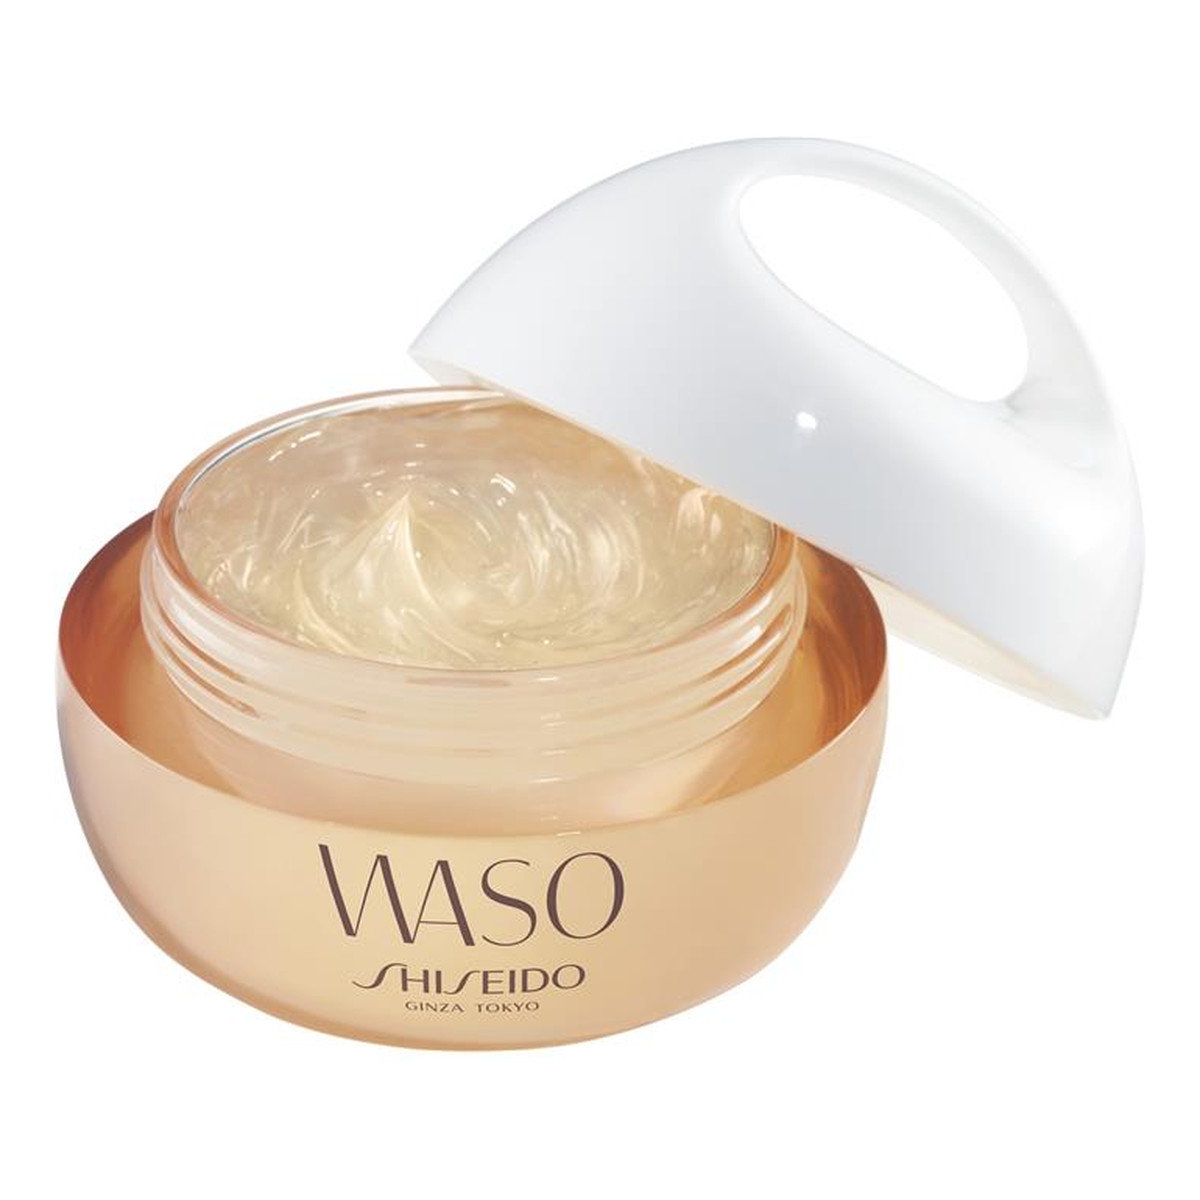 Shiseido Waso odżywczo-nawilżający krem do twarzy 50ml